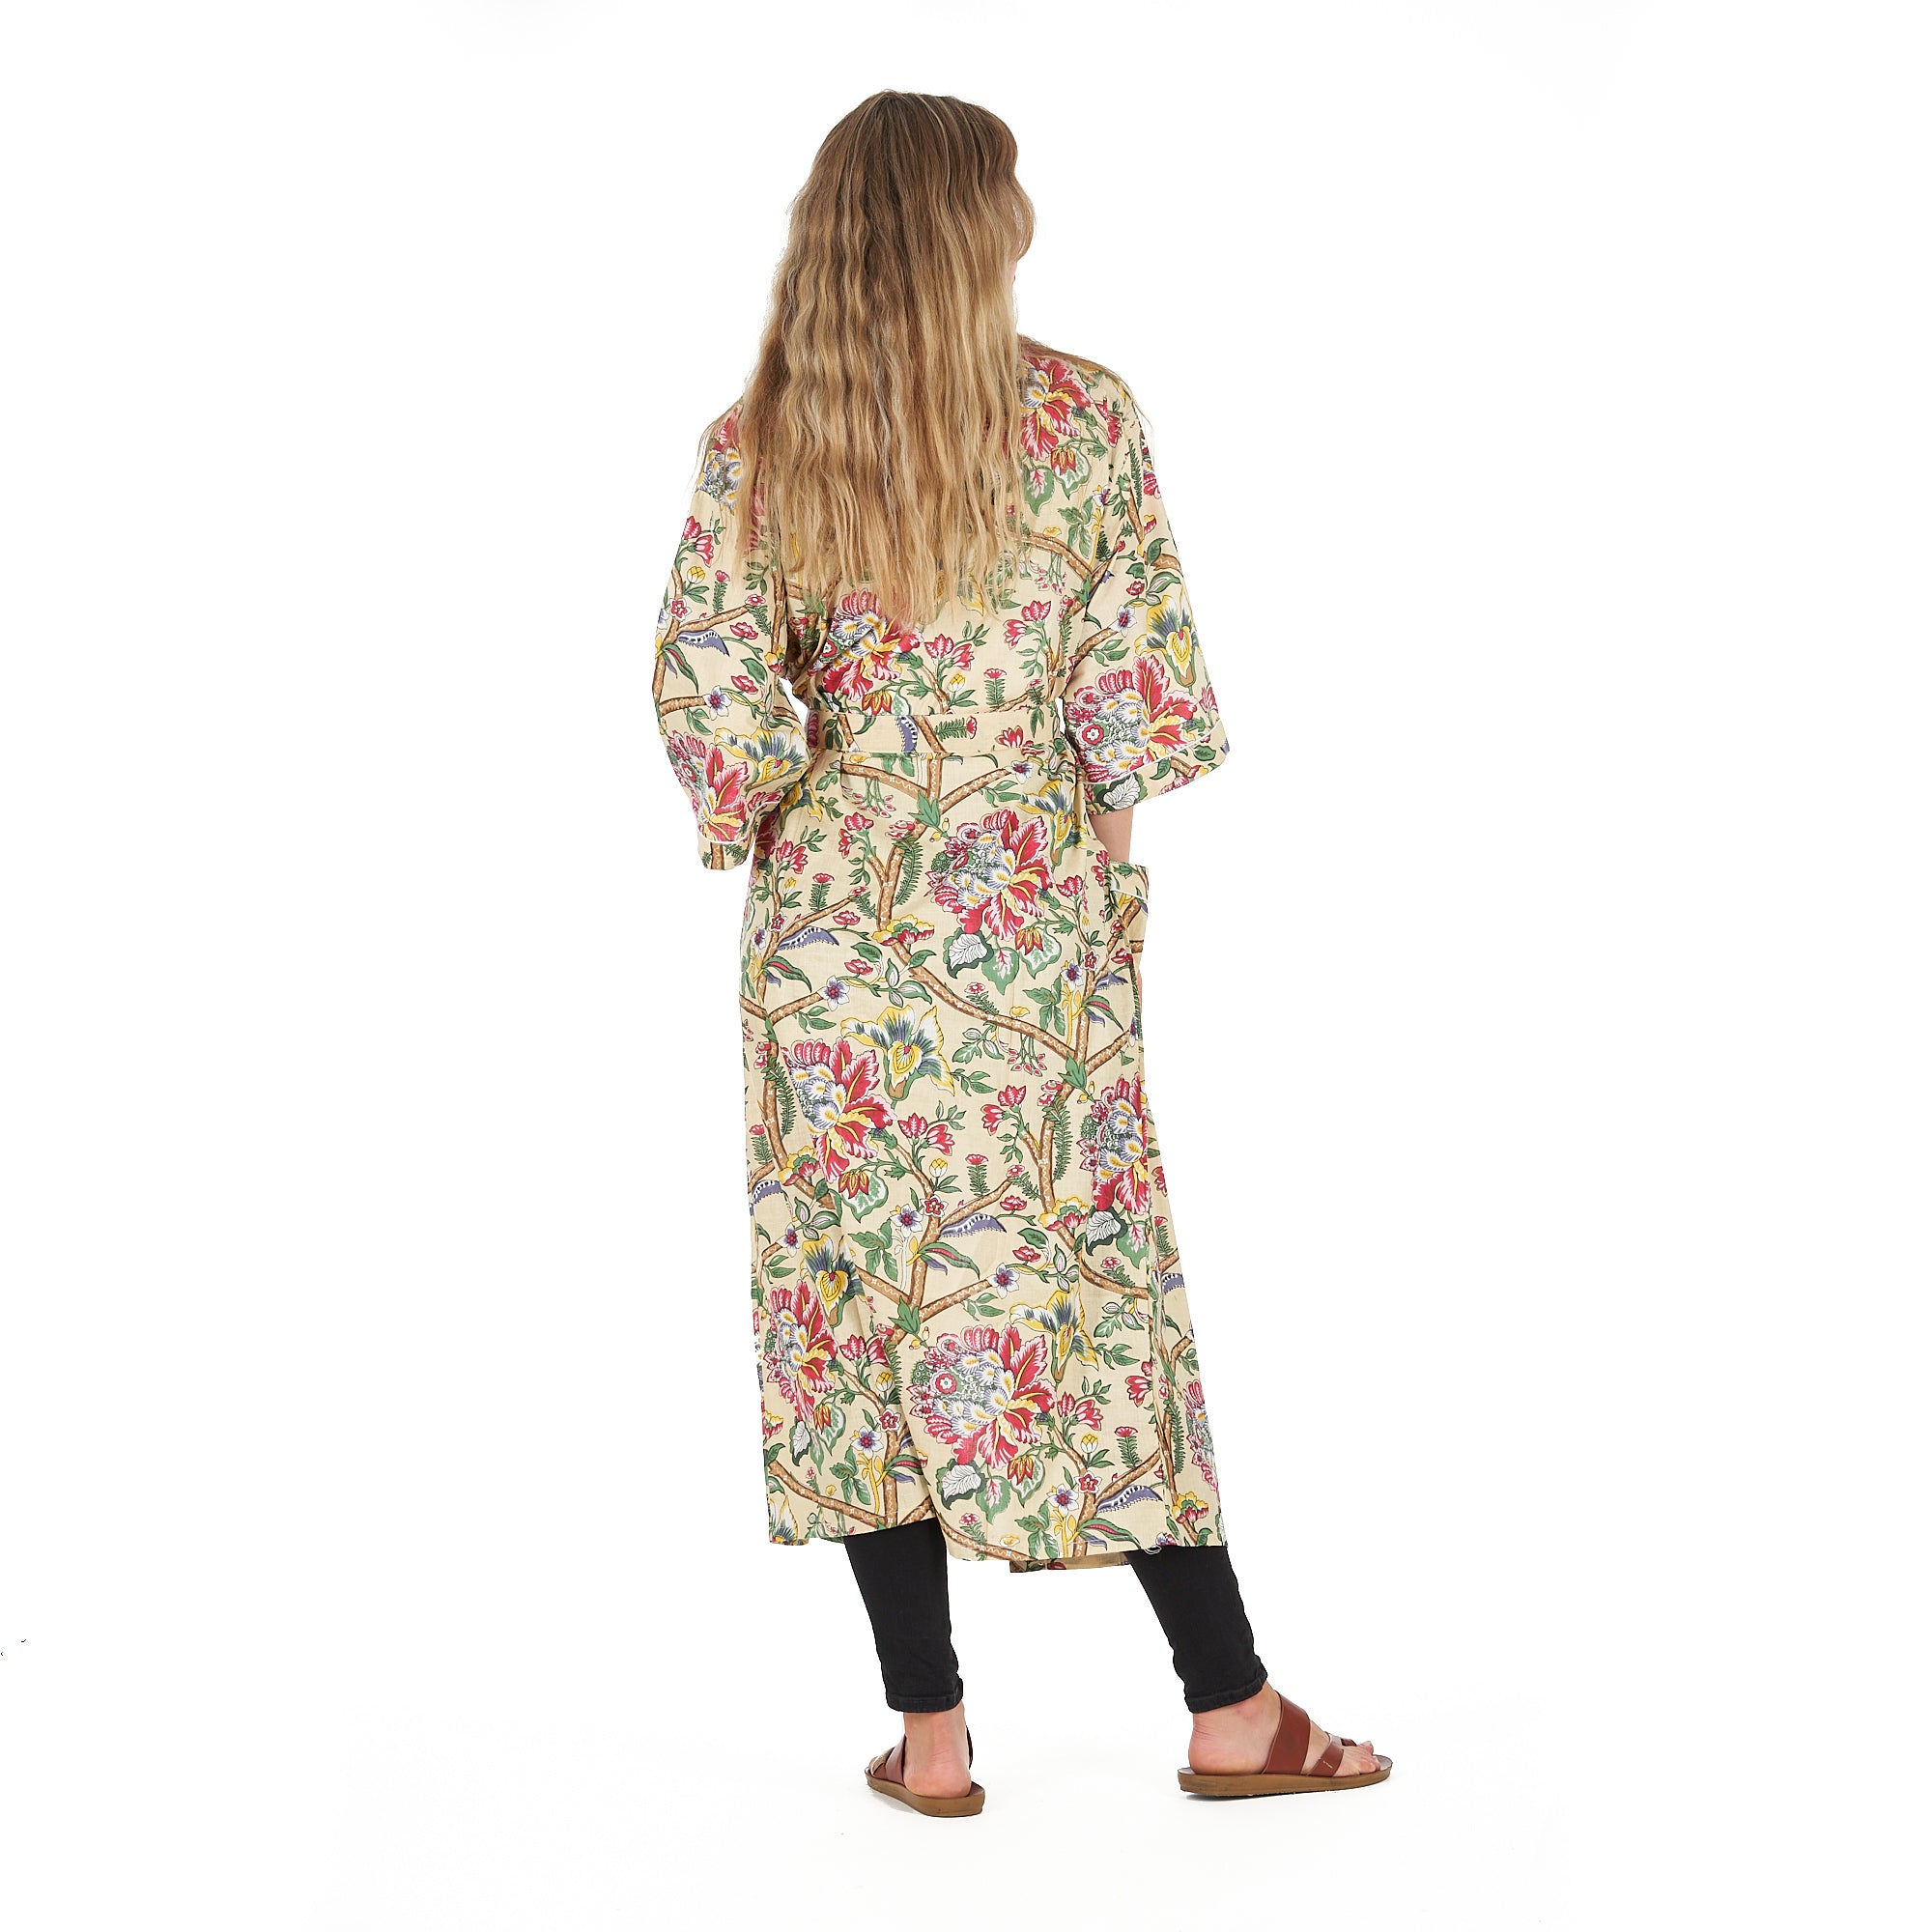 'Yellow Sherbet Florals' 100% Cotton Kimono Robe